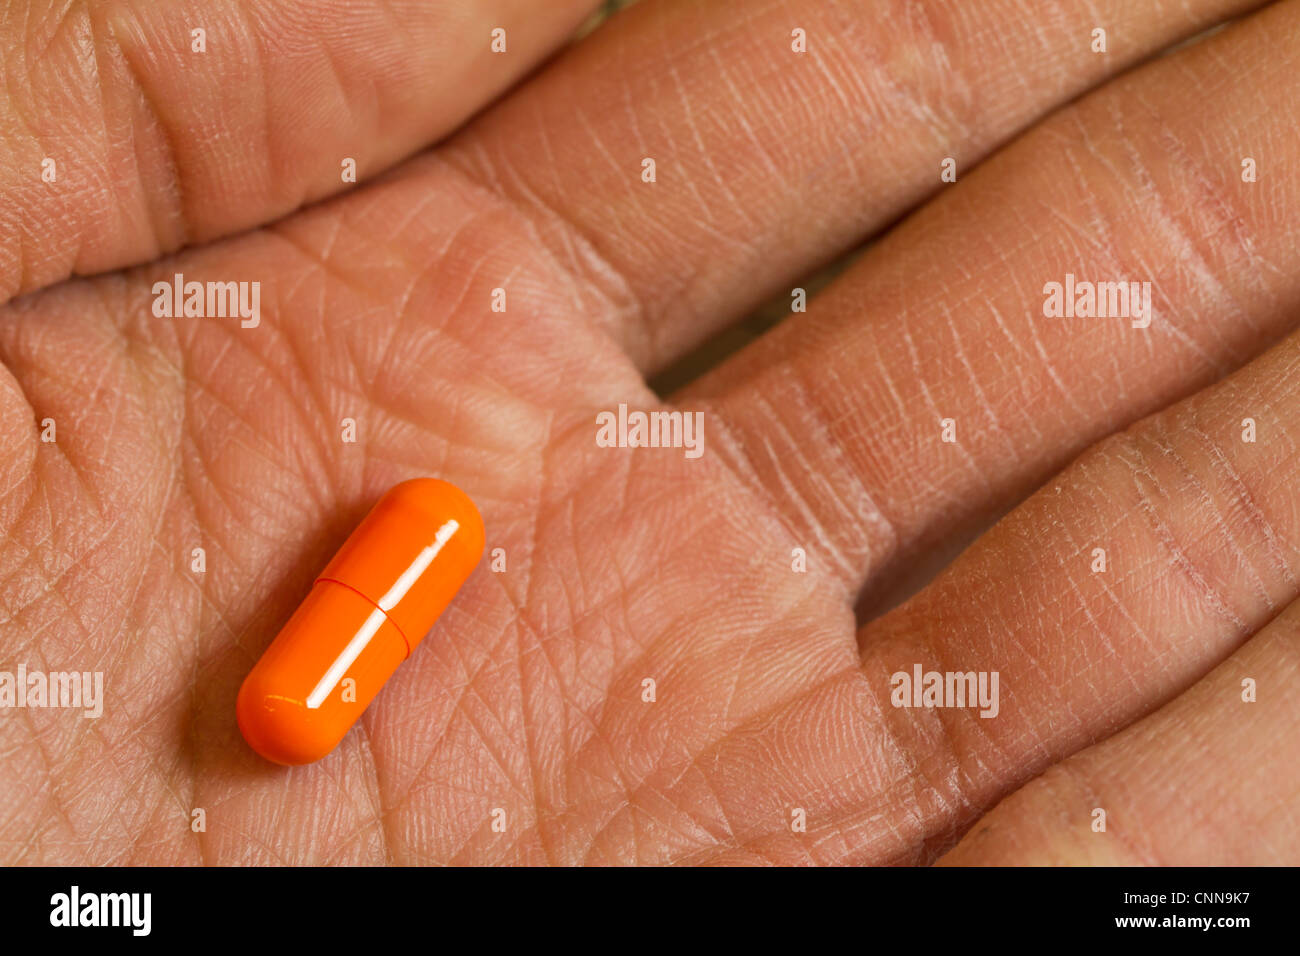 Handfläche der Hand, die eine Kapsel/Medikamente Stockfoto